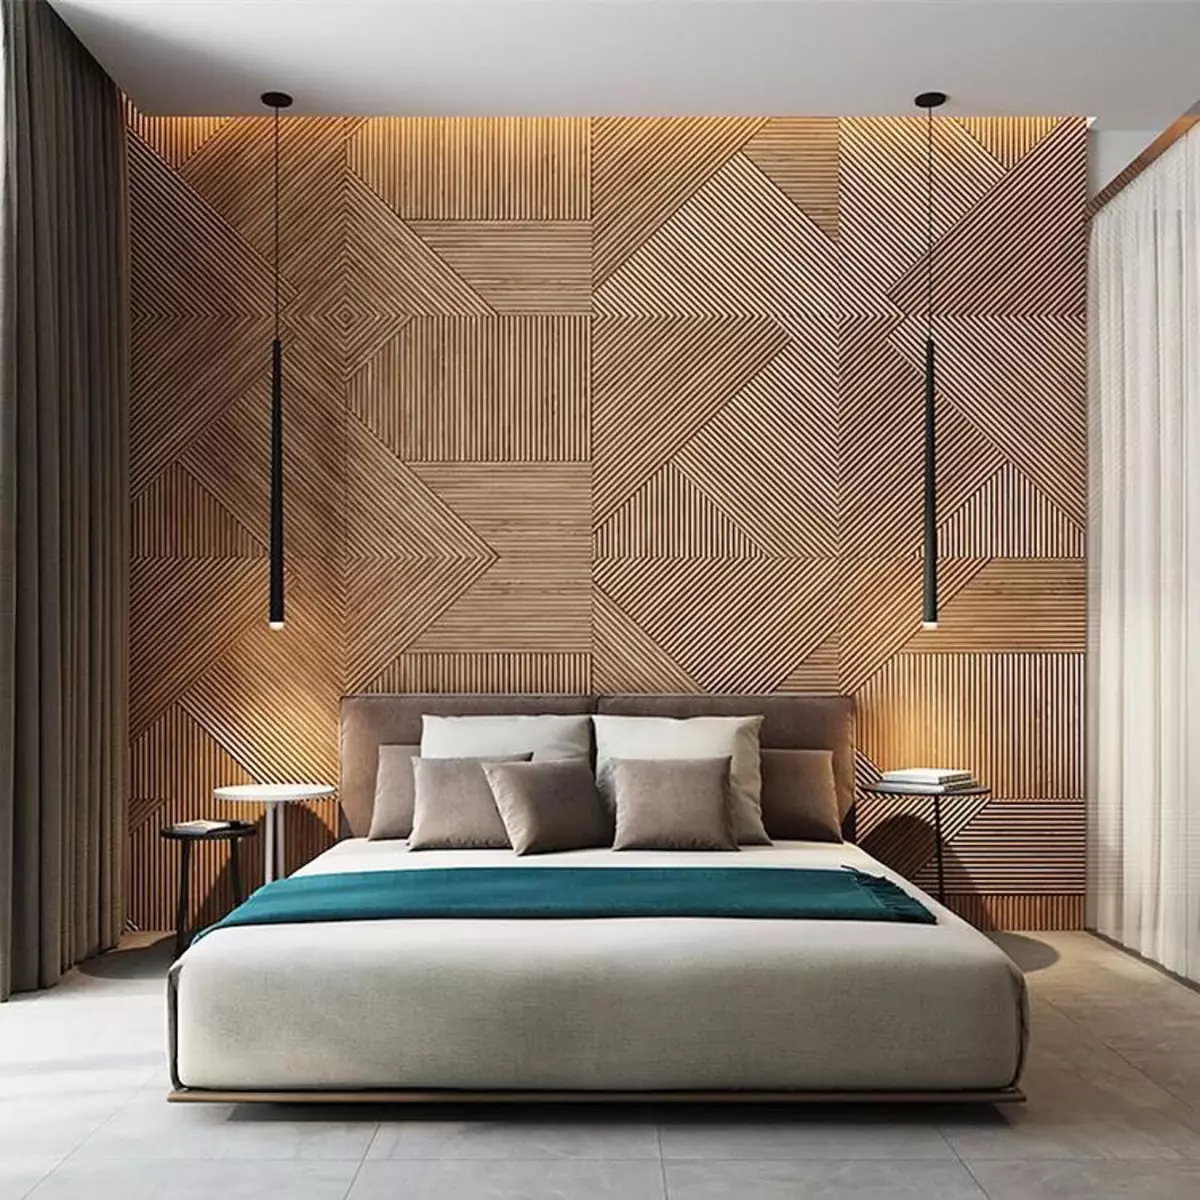 дерев'яні панелі з натурального дерева для обробки стін в інтер'єрі дизайн декор